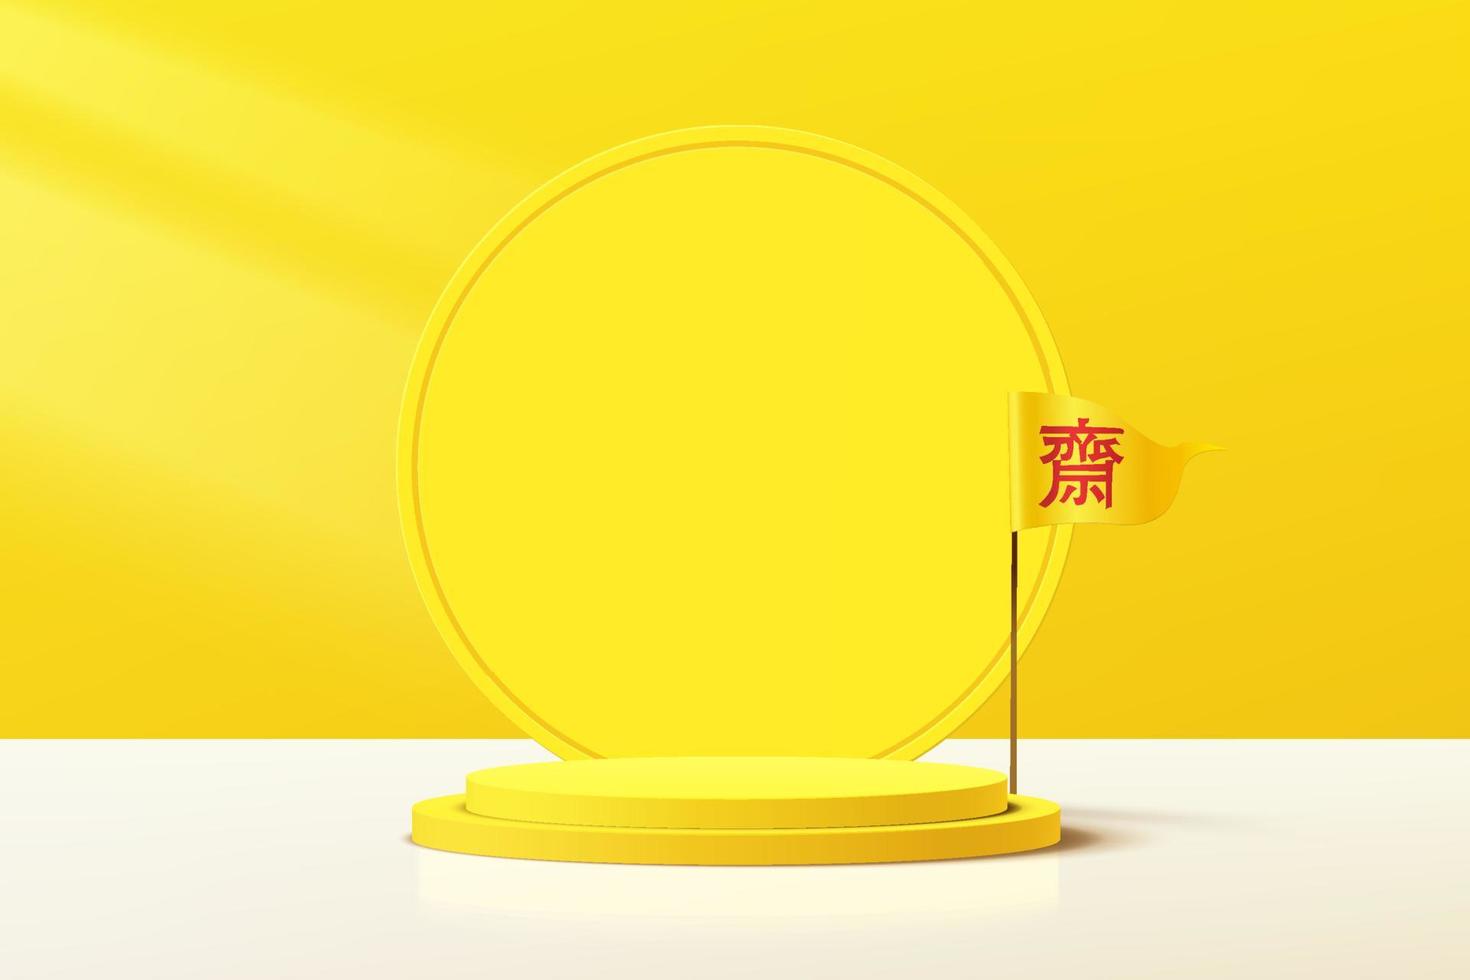 pódio de pedestal de cilindro amarelo 3d abstrato com pano de fundo do círculo e bandeira do festival vegetariano chinês. cena do festival de nove deuses imperadores para apresentação de exibição de produtos. projeto de renderização vetorial. vetor